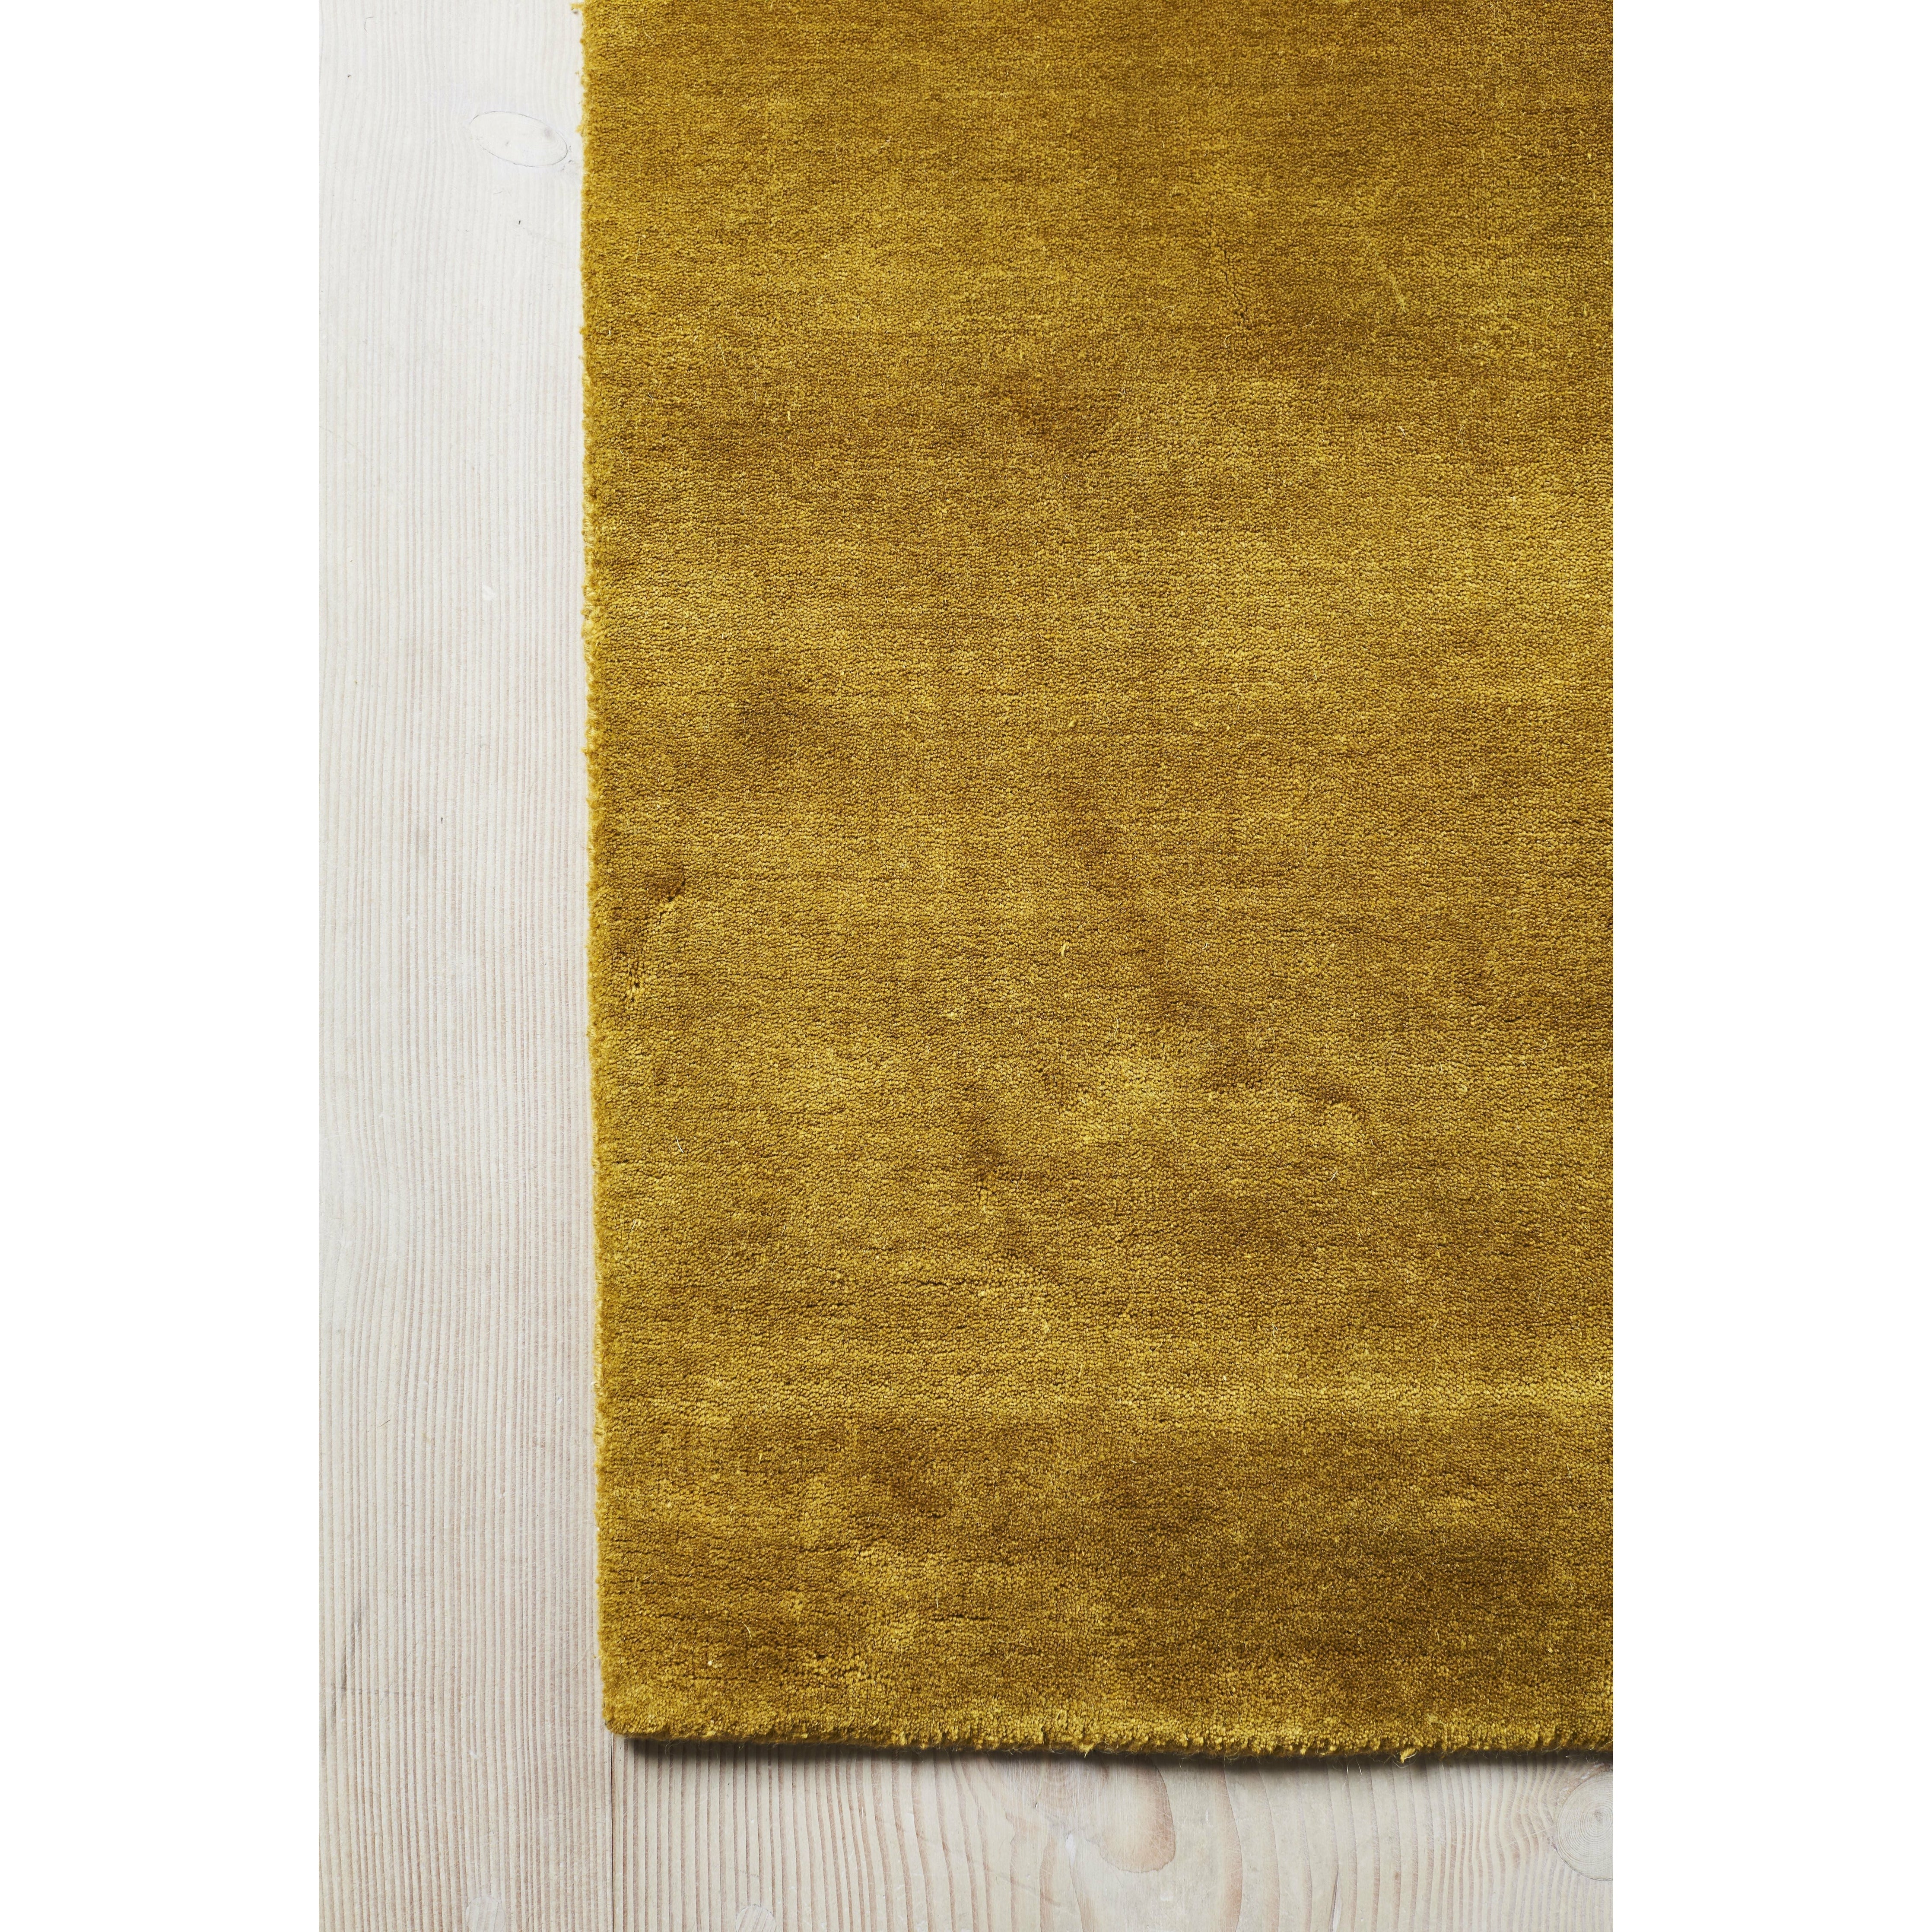 Massimo Erde Bambusteppich Chinesisch Gelb, 140x200 cm